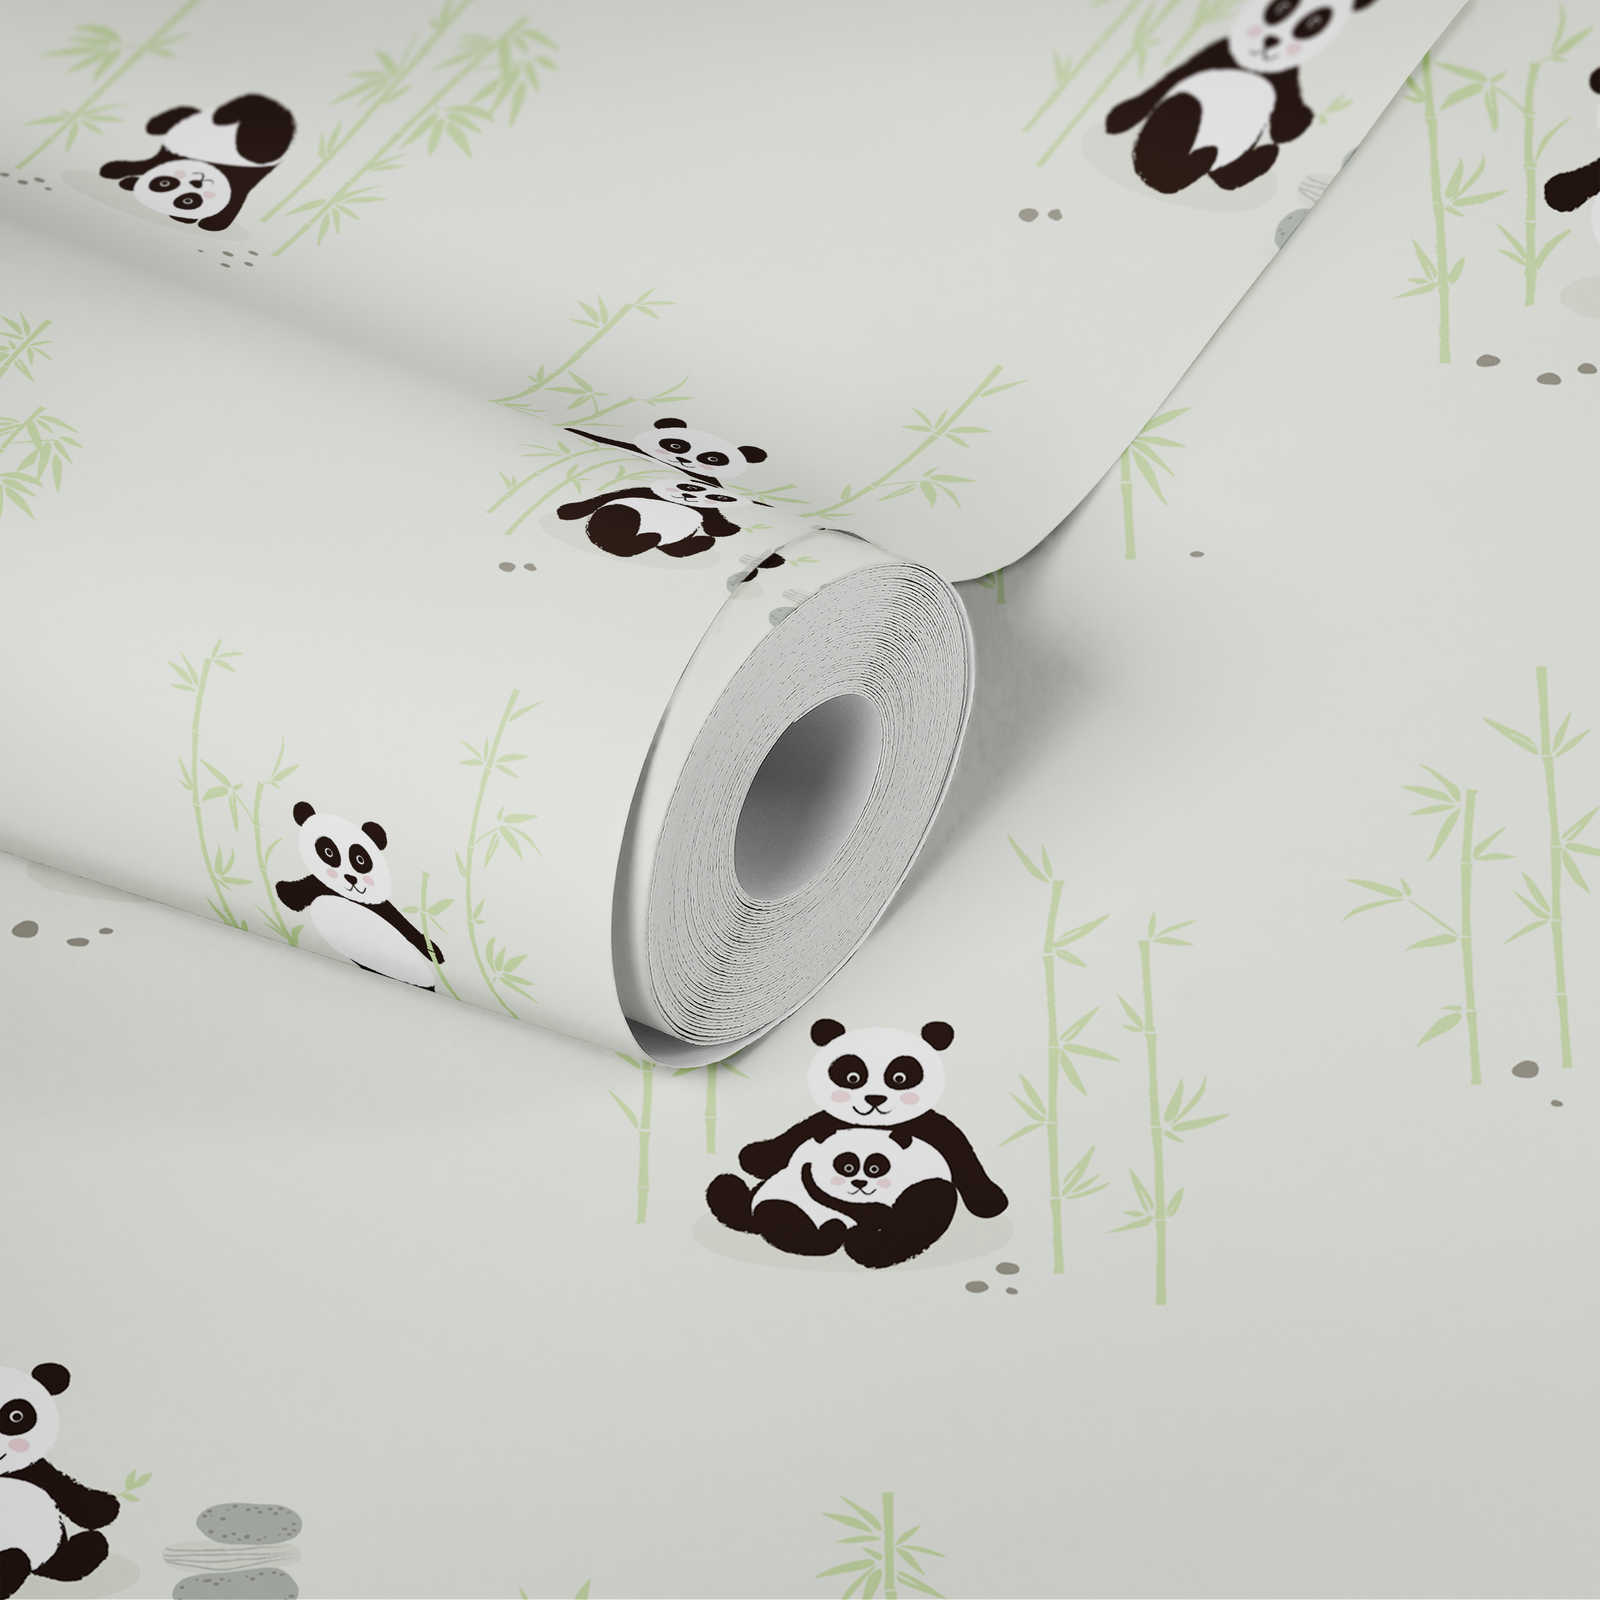             Kinderzimmer Panda Tapete – Grün, Schwarz, Weiß
        